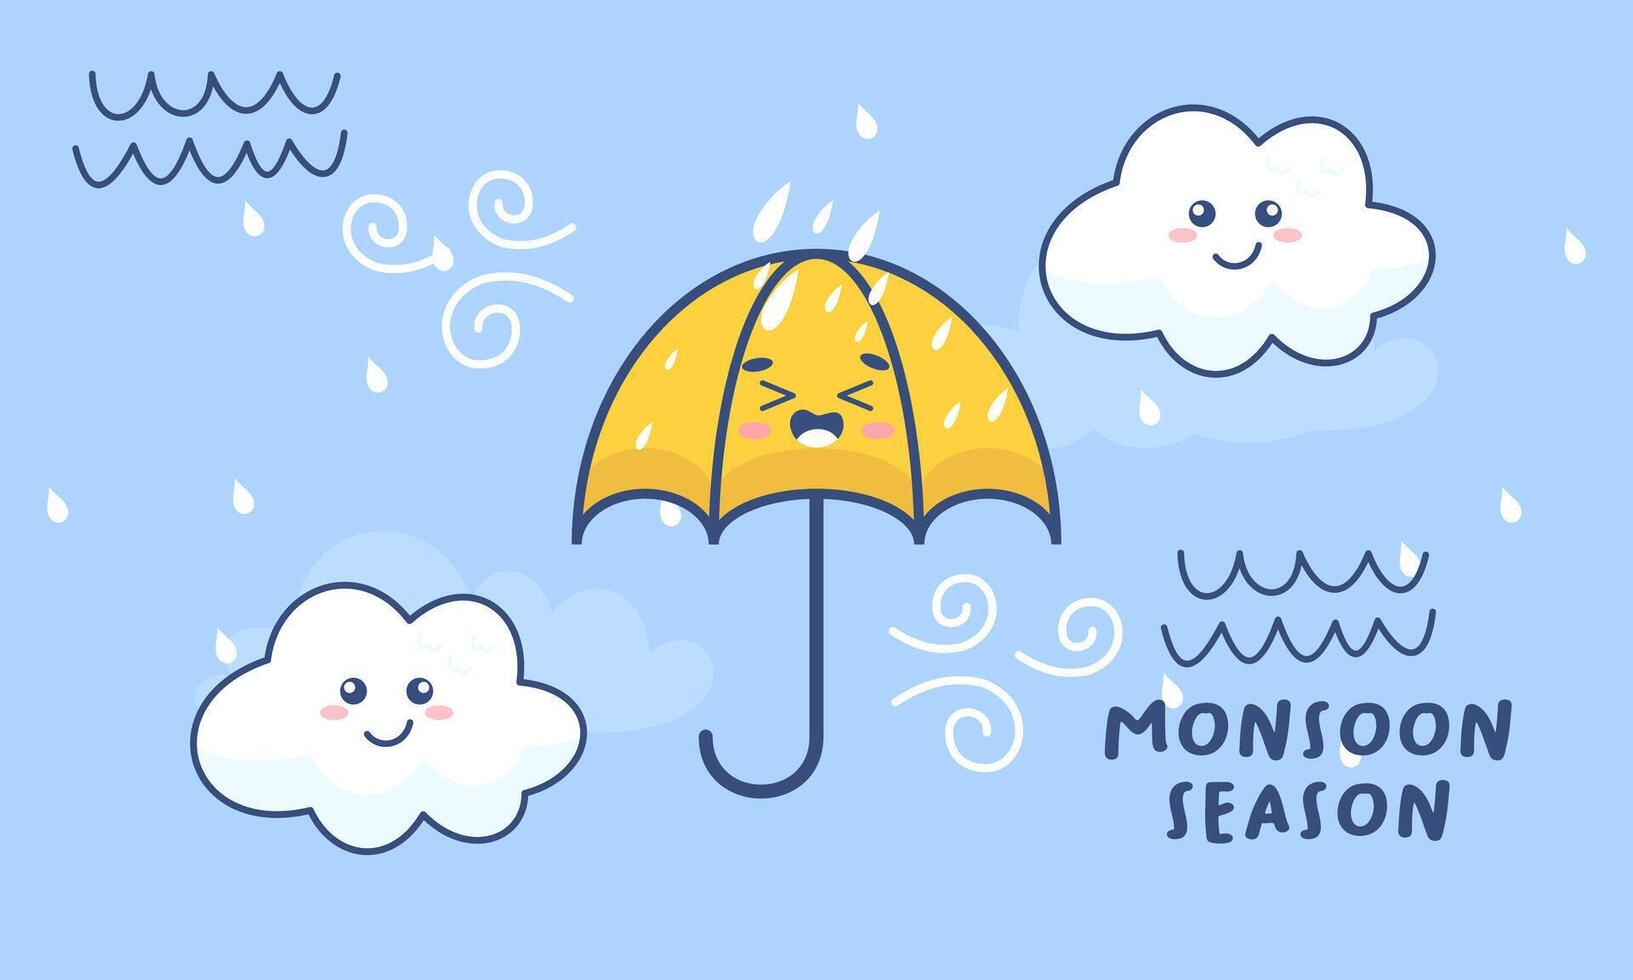 mousson saison illustration avec parapluies vecteur